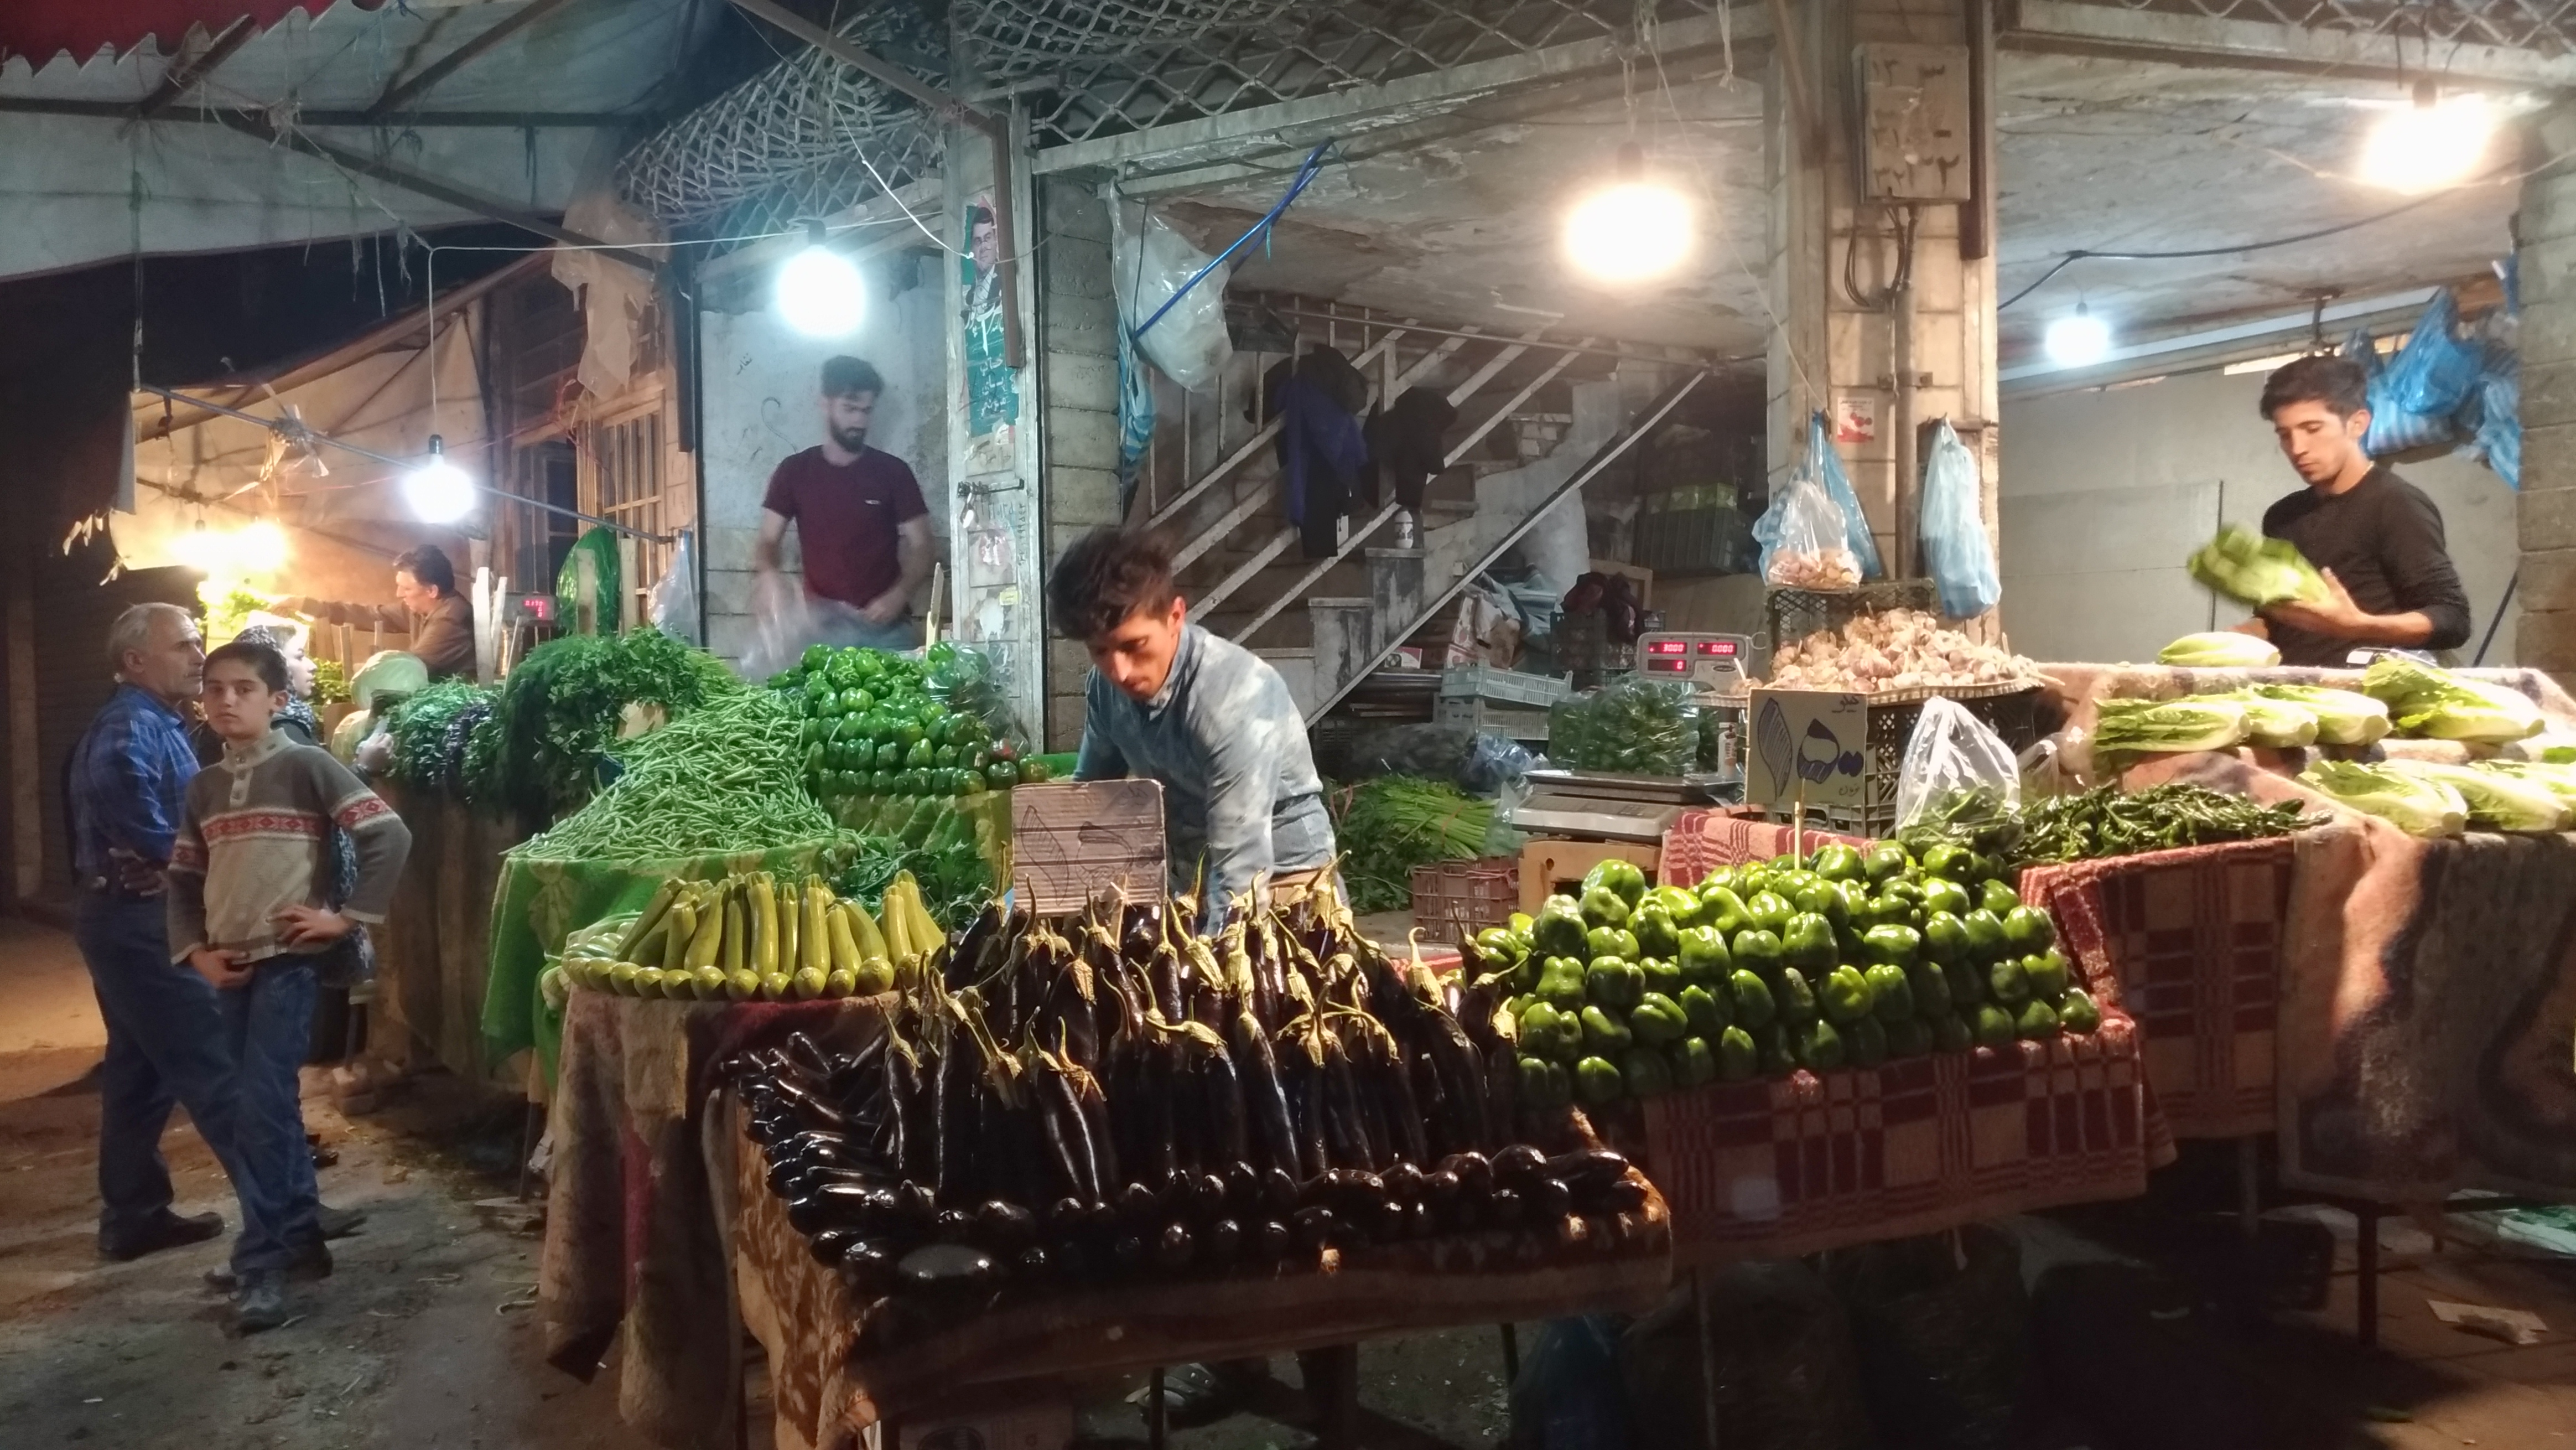 Urmia's produce market (1)